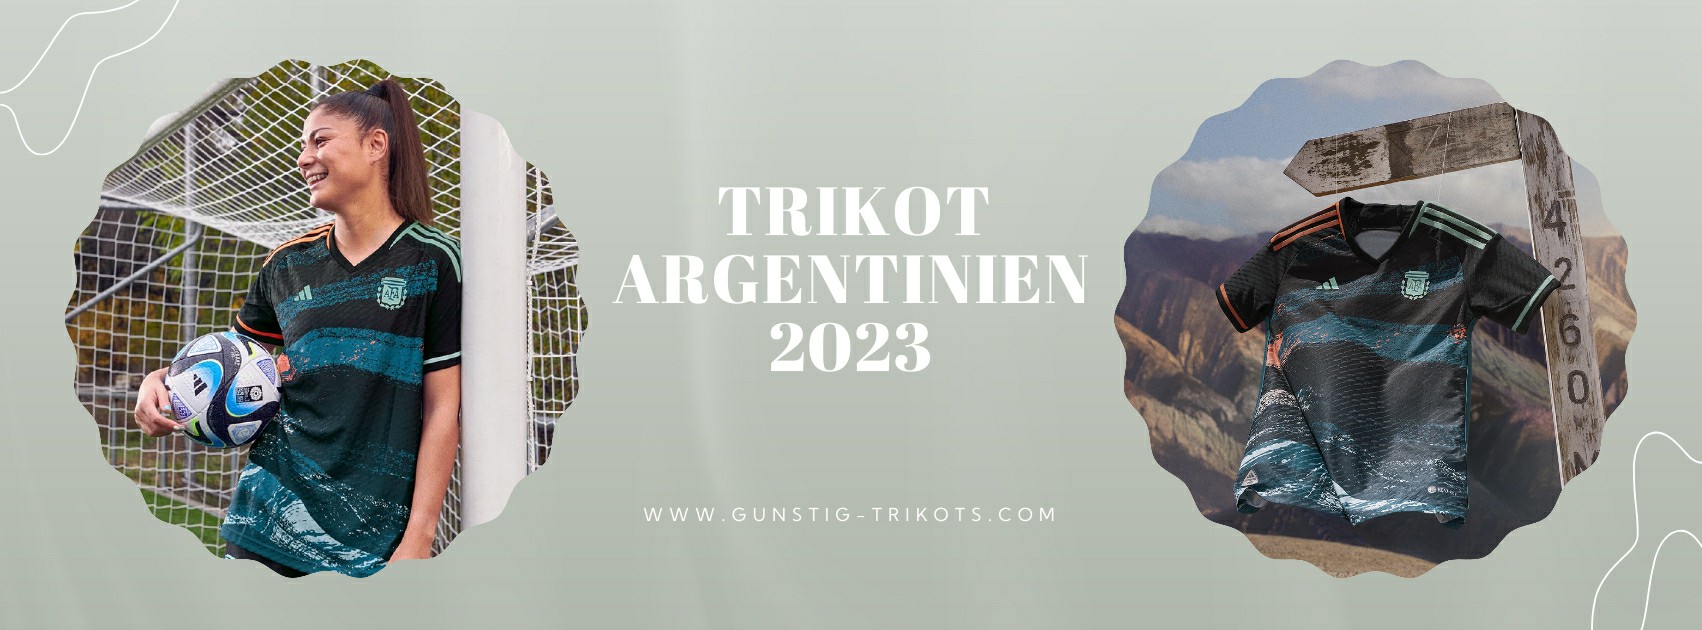 Argentinien Trikot 2023-2024